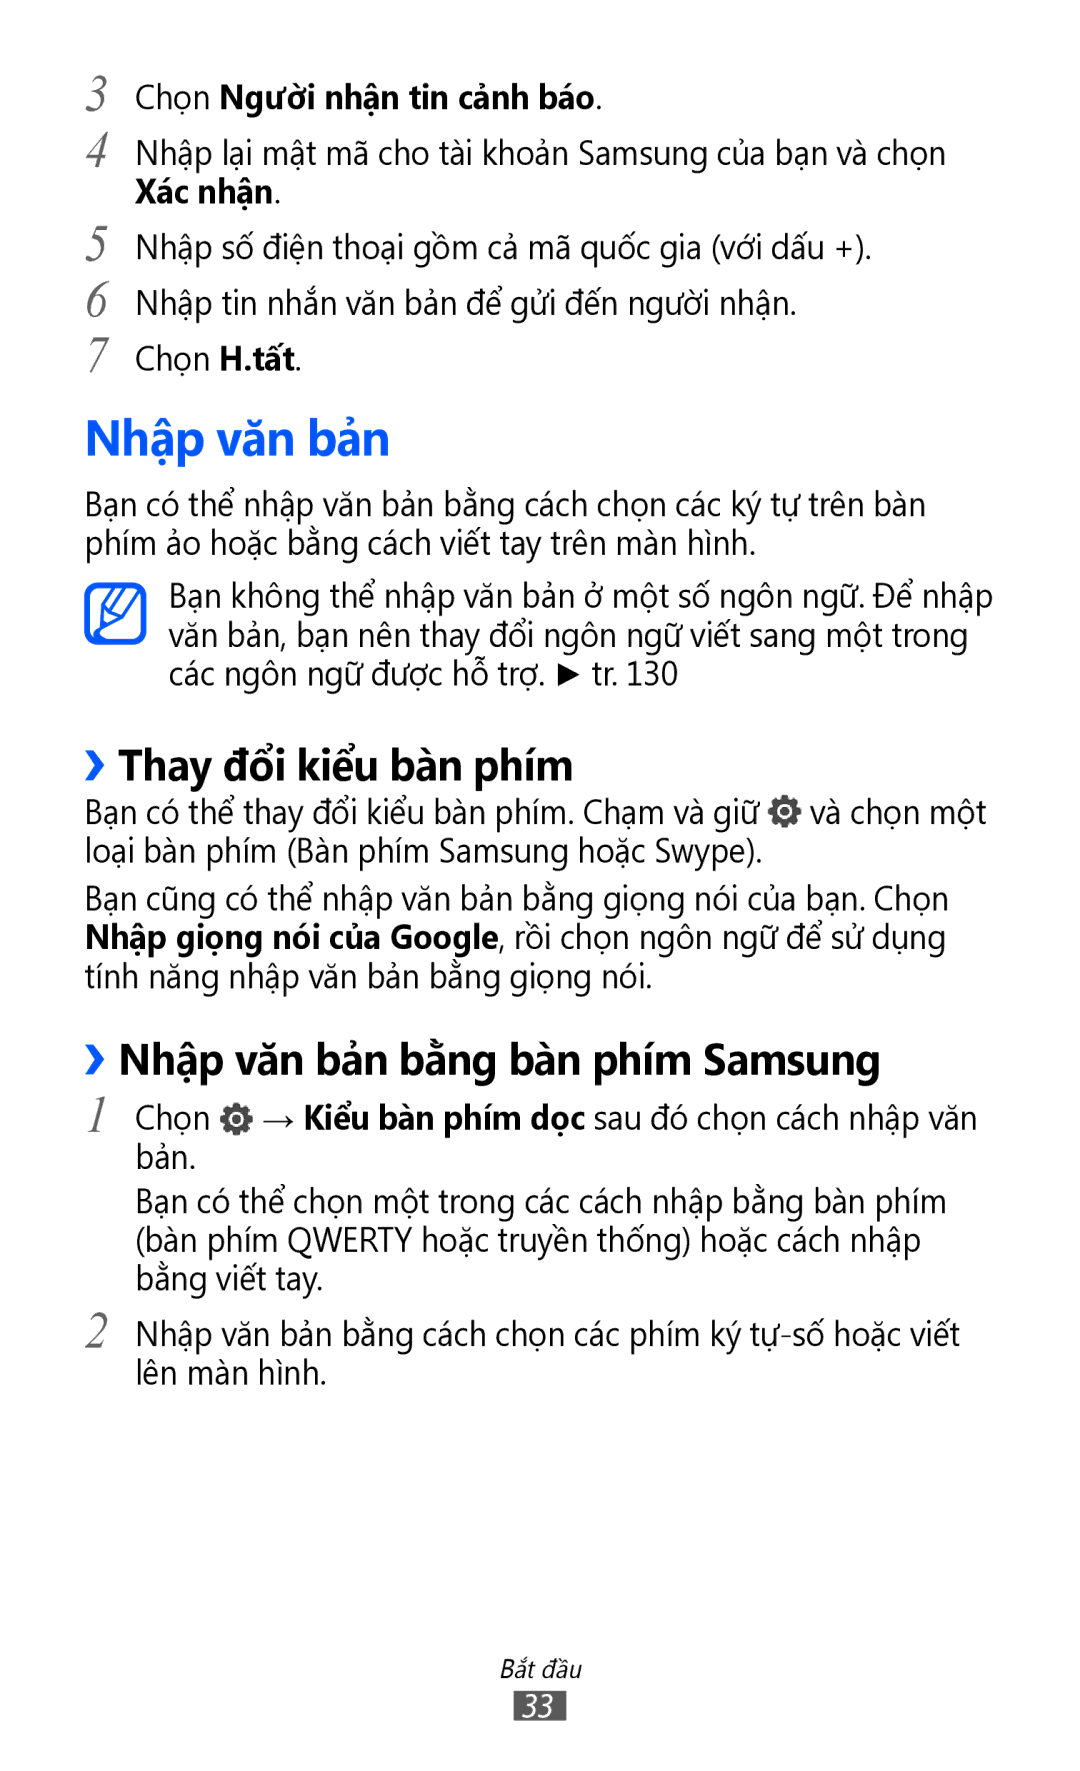 Samsung GT-I9100LKAXXV ››Thay đổi kiểu bàn phím, ››Nhập văn bả̉n bằng bàn phím Samsung, Chọn Ngườ̀i nhận tin cả̉nh báo 